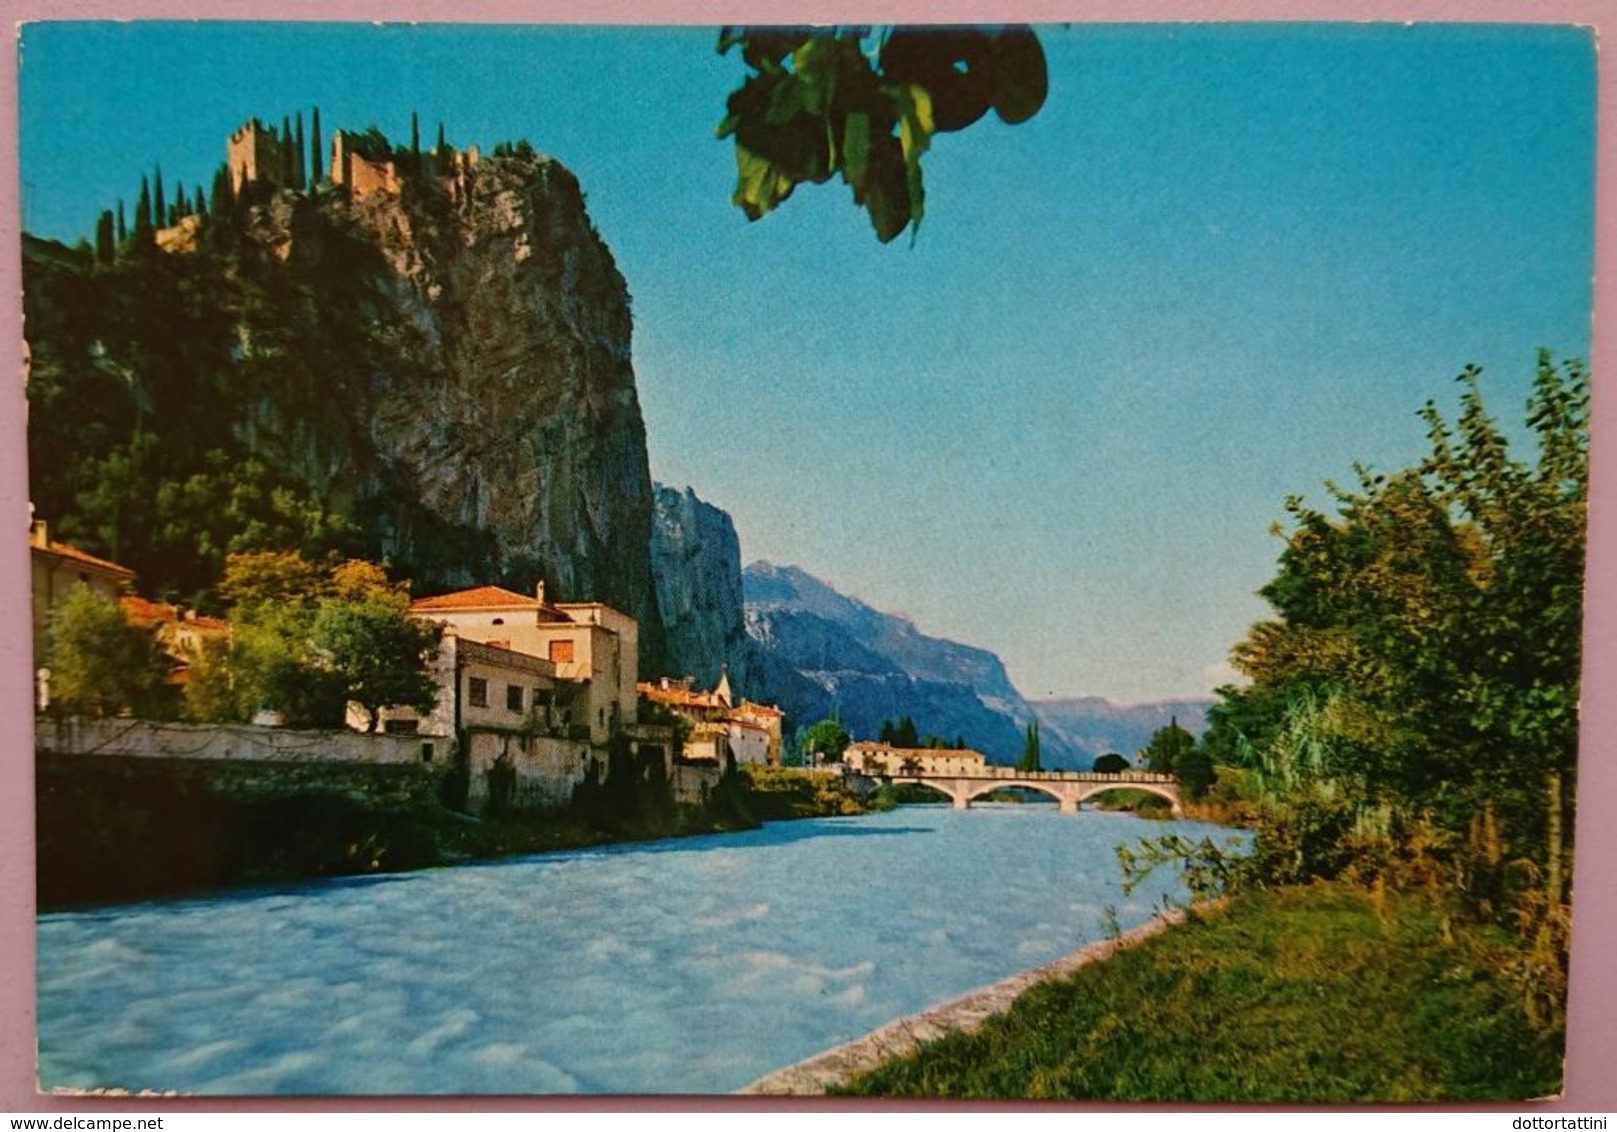 ARCO (Trento) - Fiume Sarca E Castello - Panorama - Vg TA2 - Trento